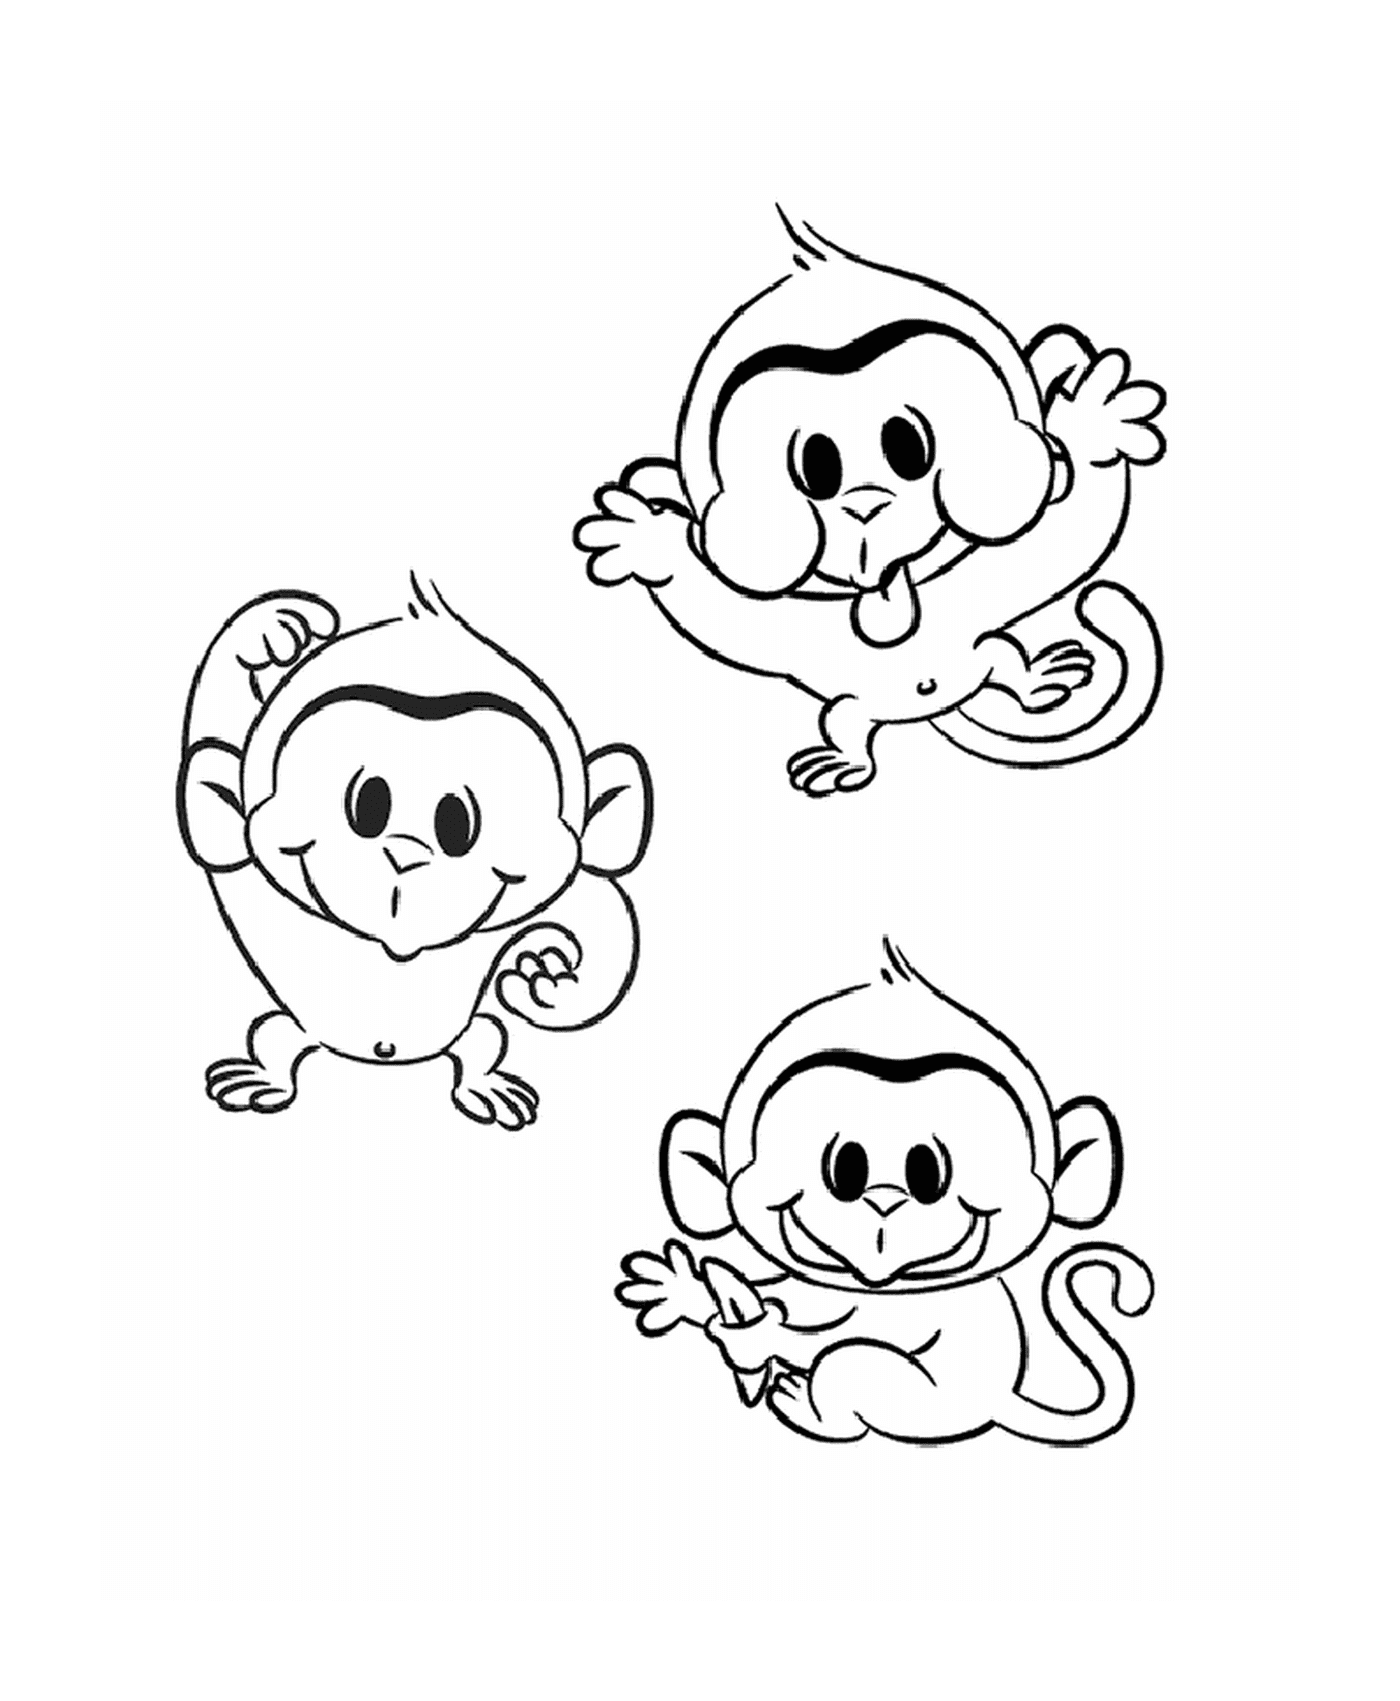  三只简单的小猴子 